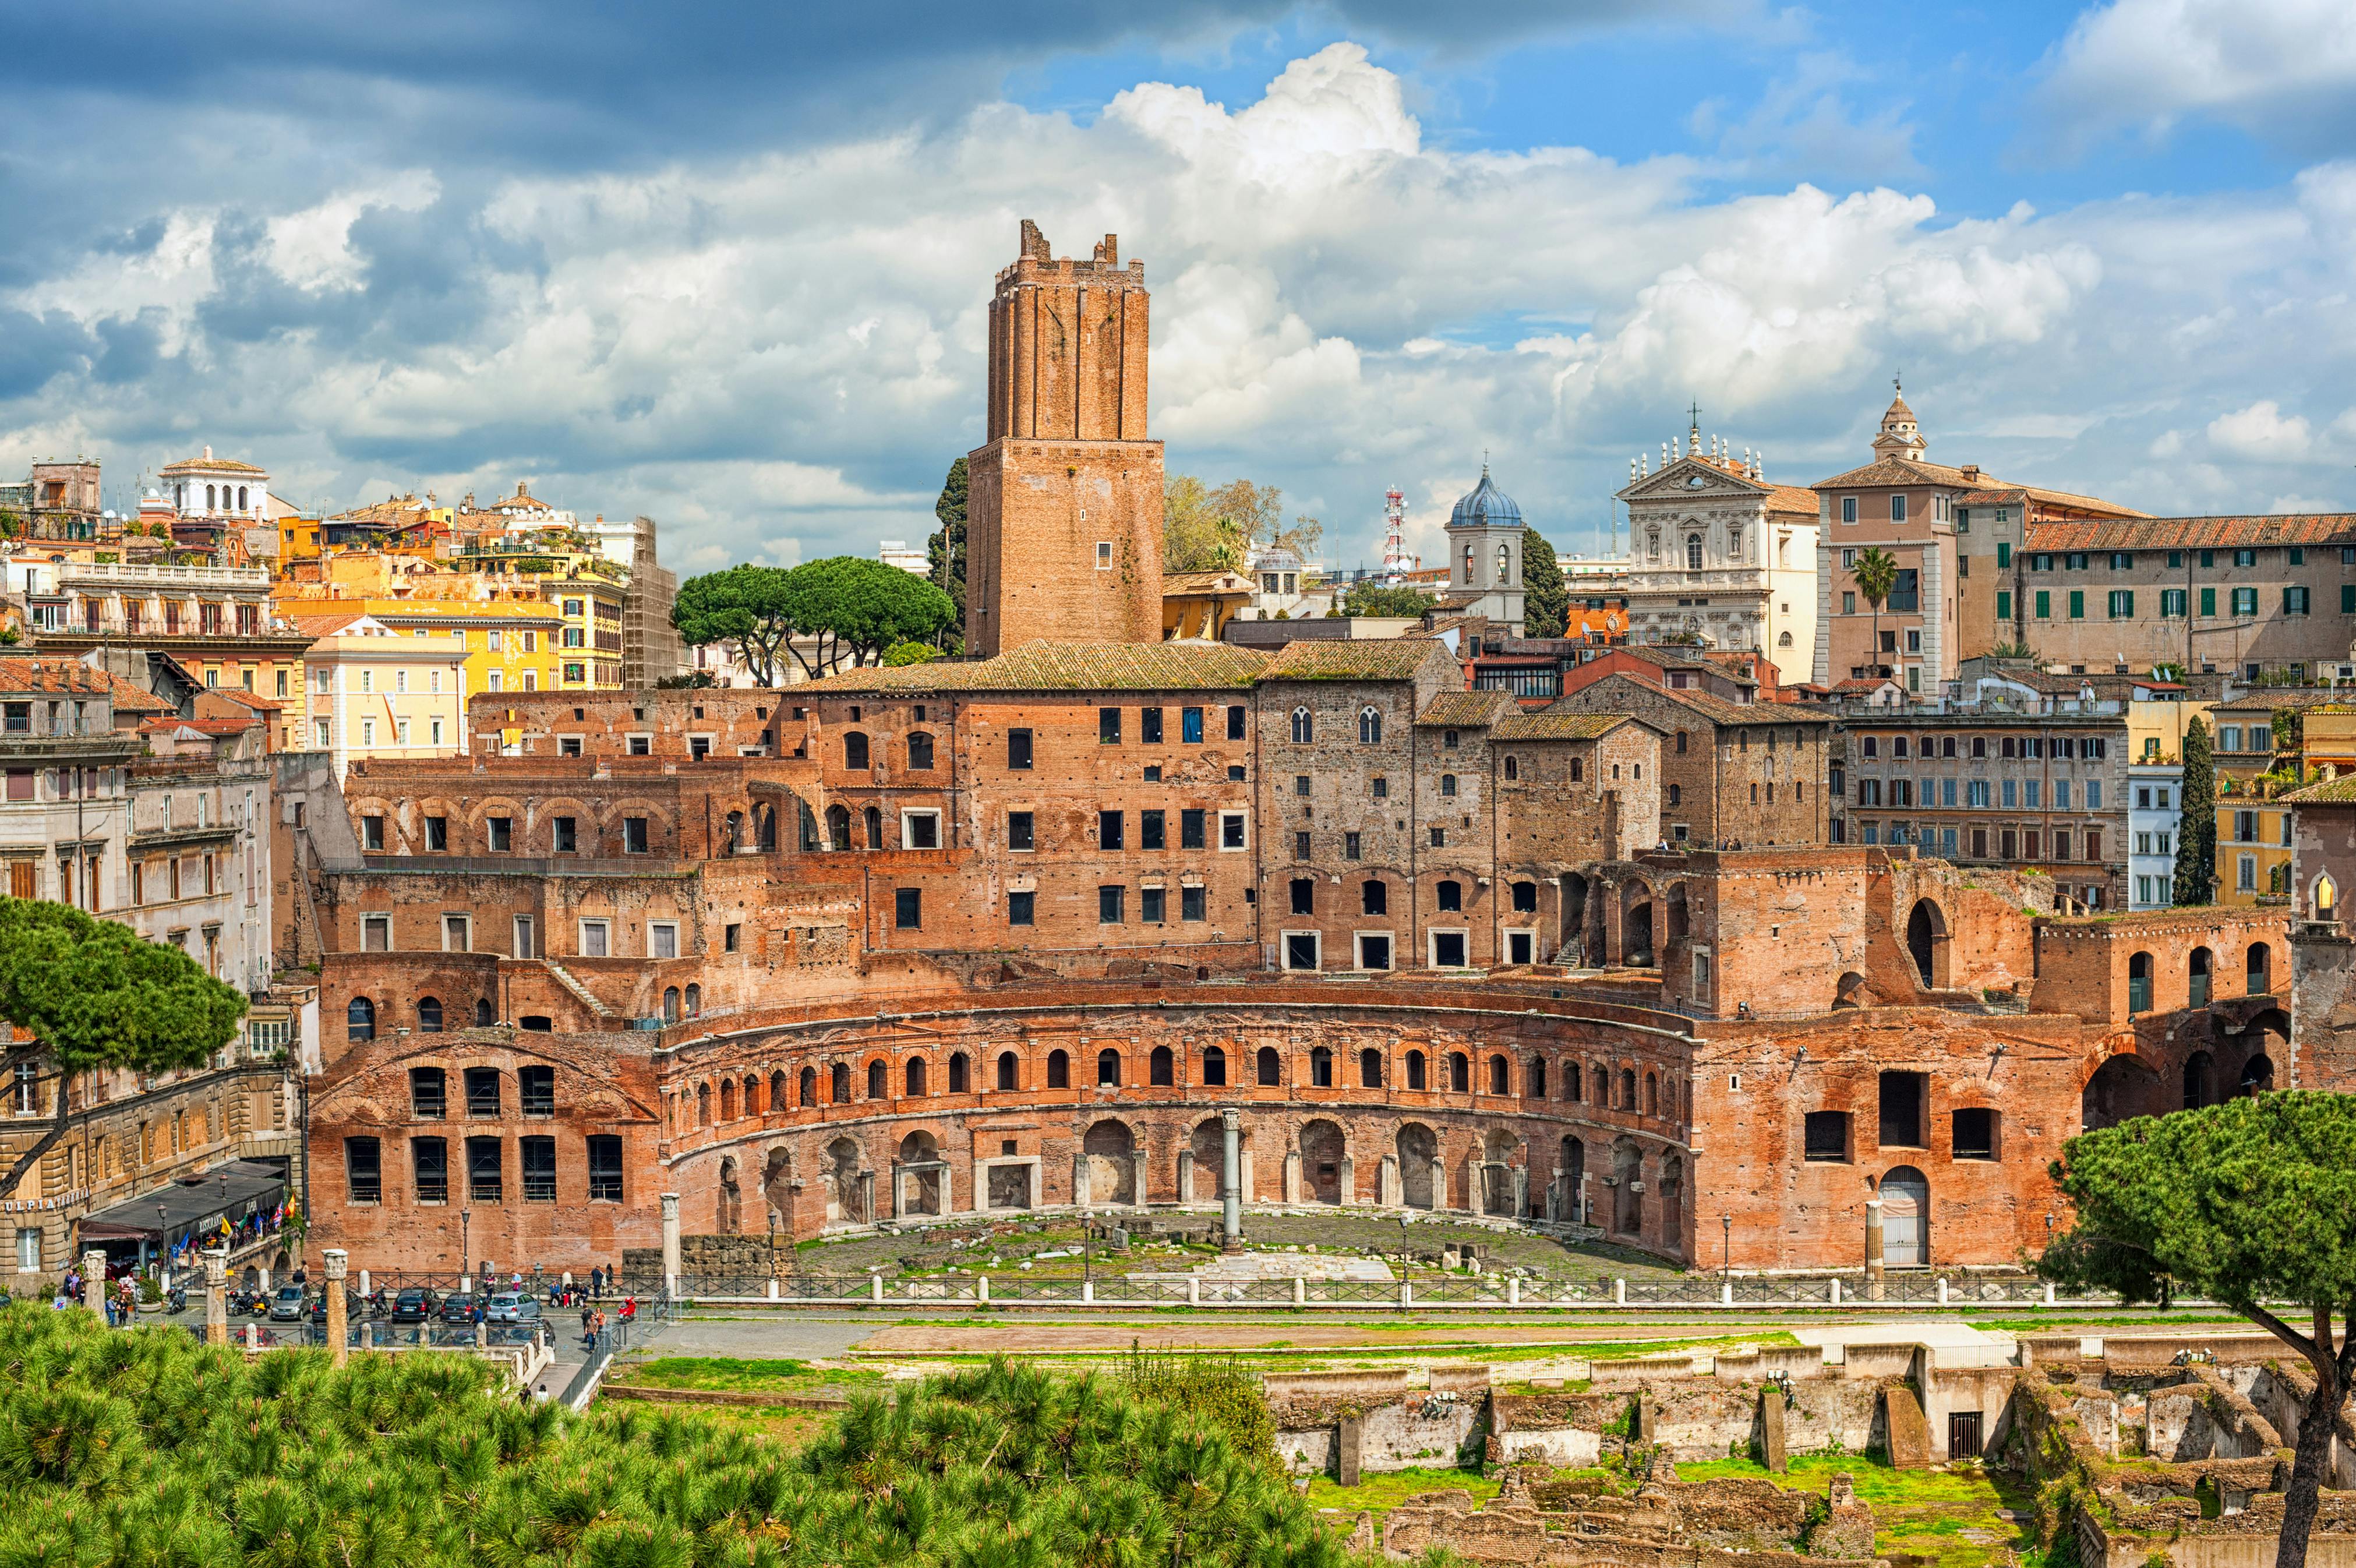 Toegangskaarten voor de markten van Trajanus en het Fori Imperiali Museum